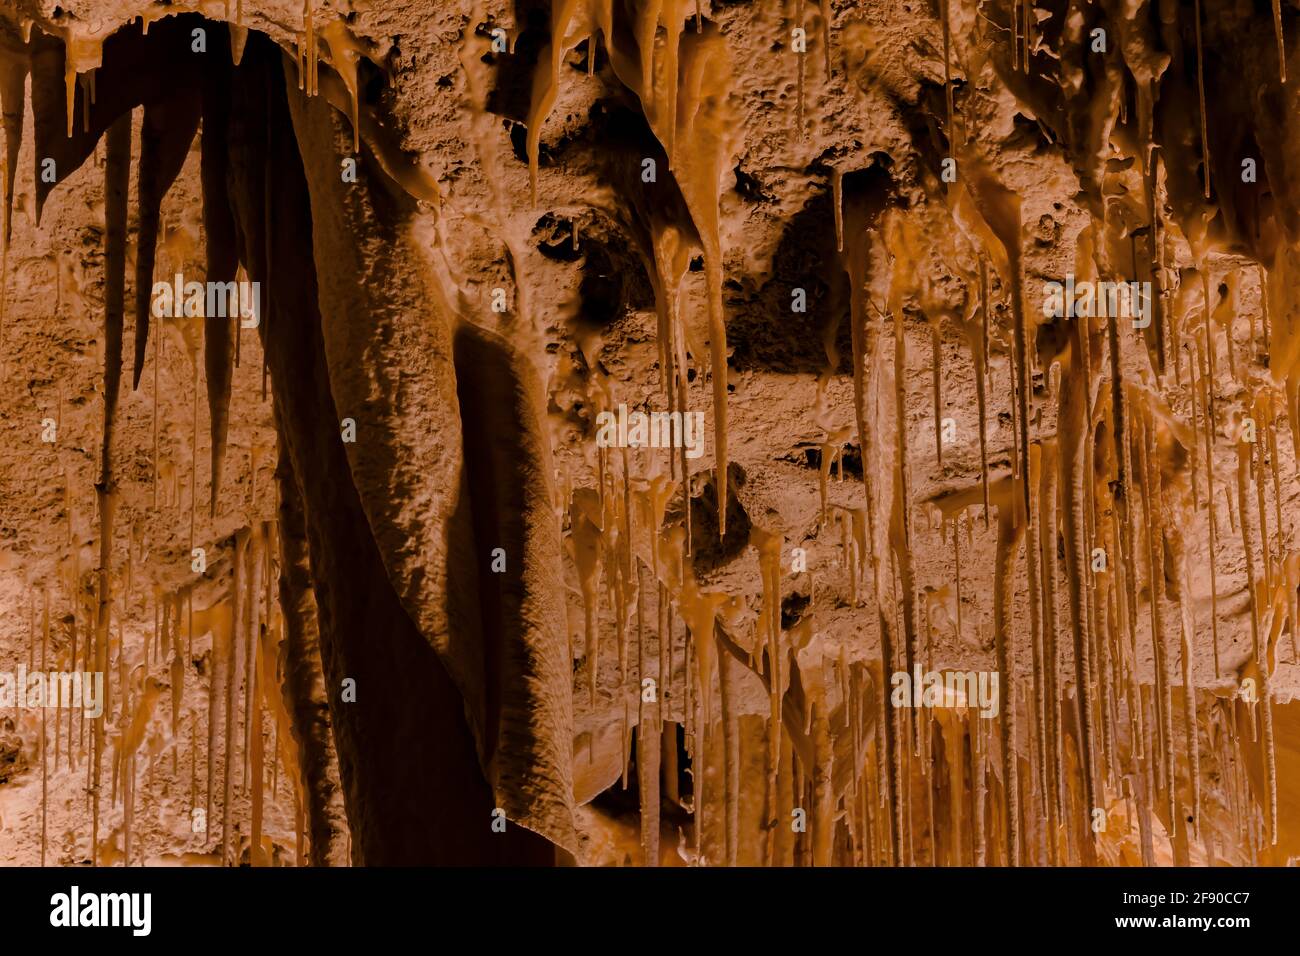 Formaciones de Magniflcent a lo largo de Big Room Trail en el subsuelo profundo en el Parque Nacional de las Cavernas Carlsbad, Nuevo México, Estados Unidos Foto de stock